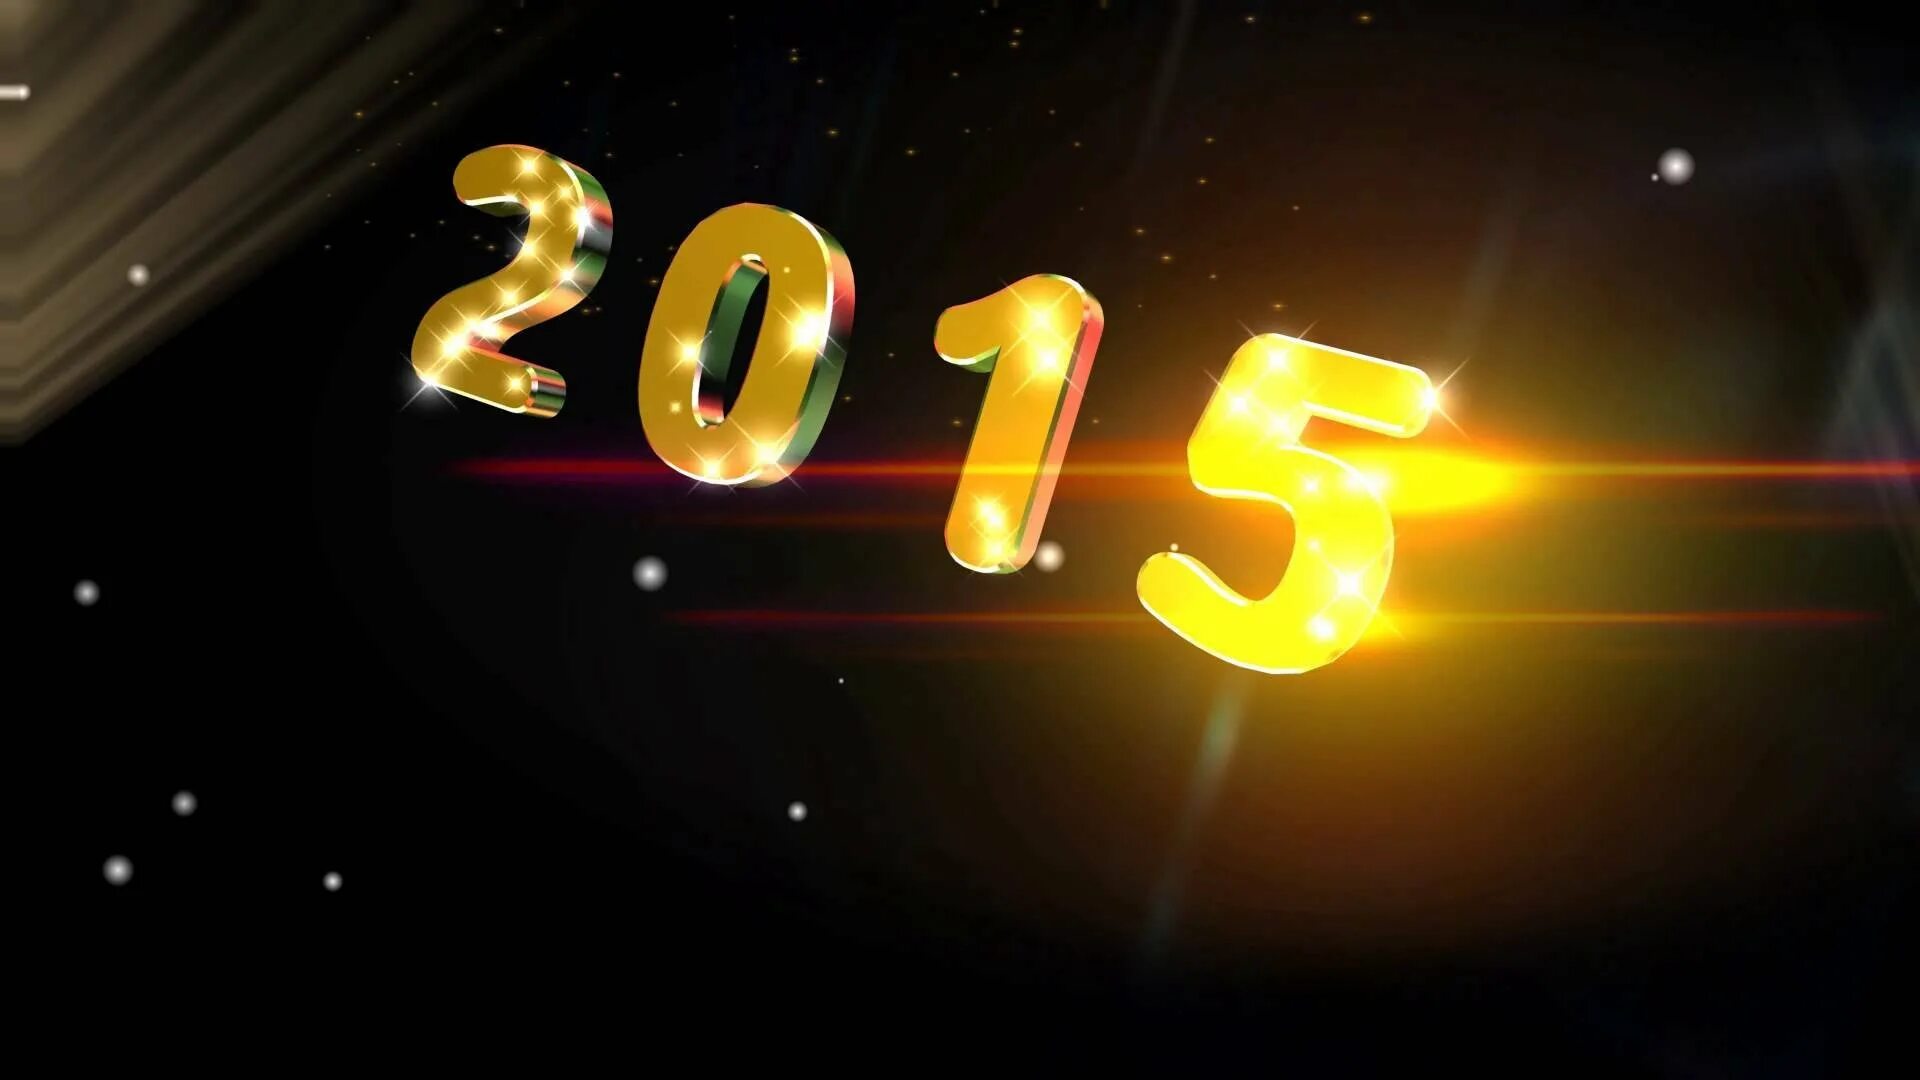 Юбилейный год 2012. 2015 Год. Картинки 2015 года. Новый год 2015. Обои на рабочий стол 2015 года.